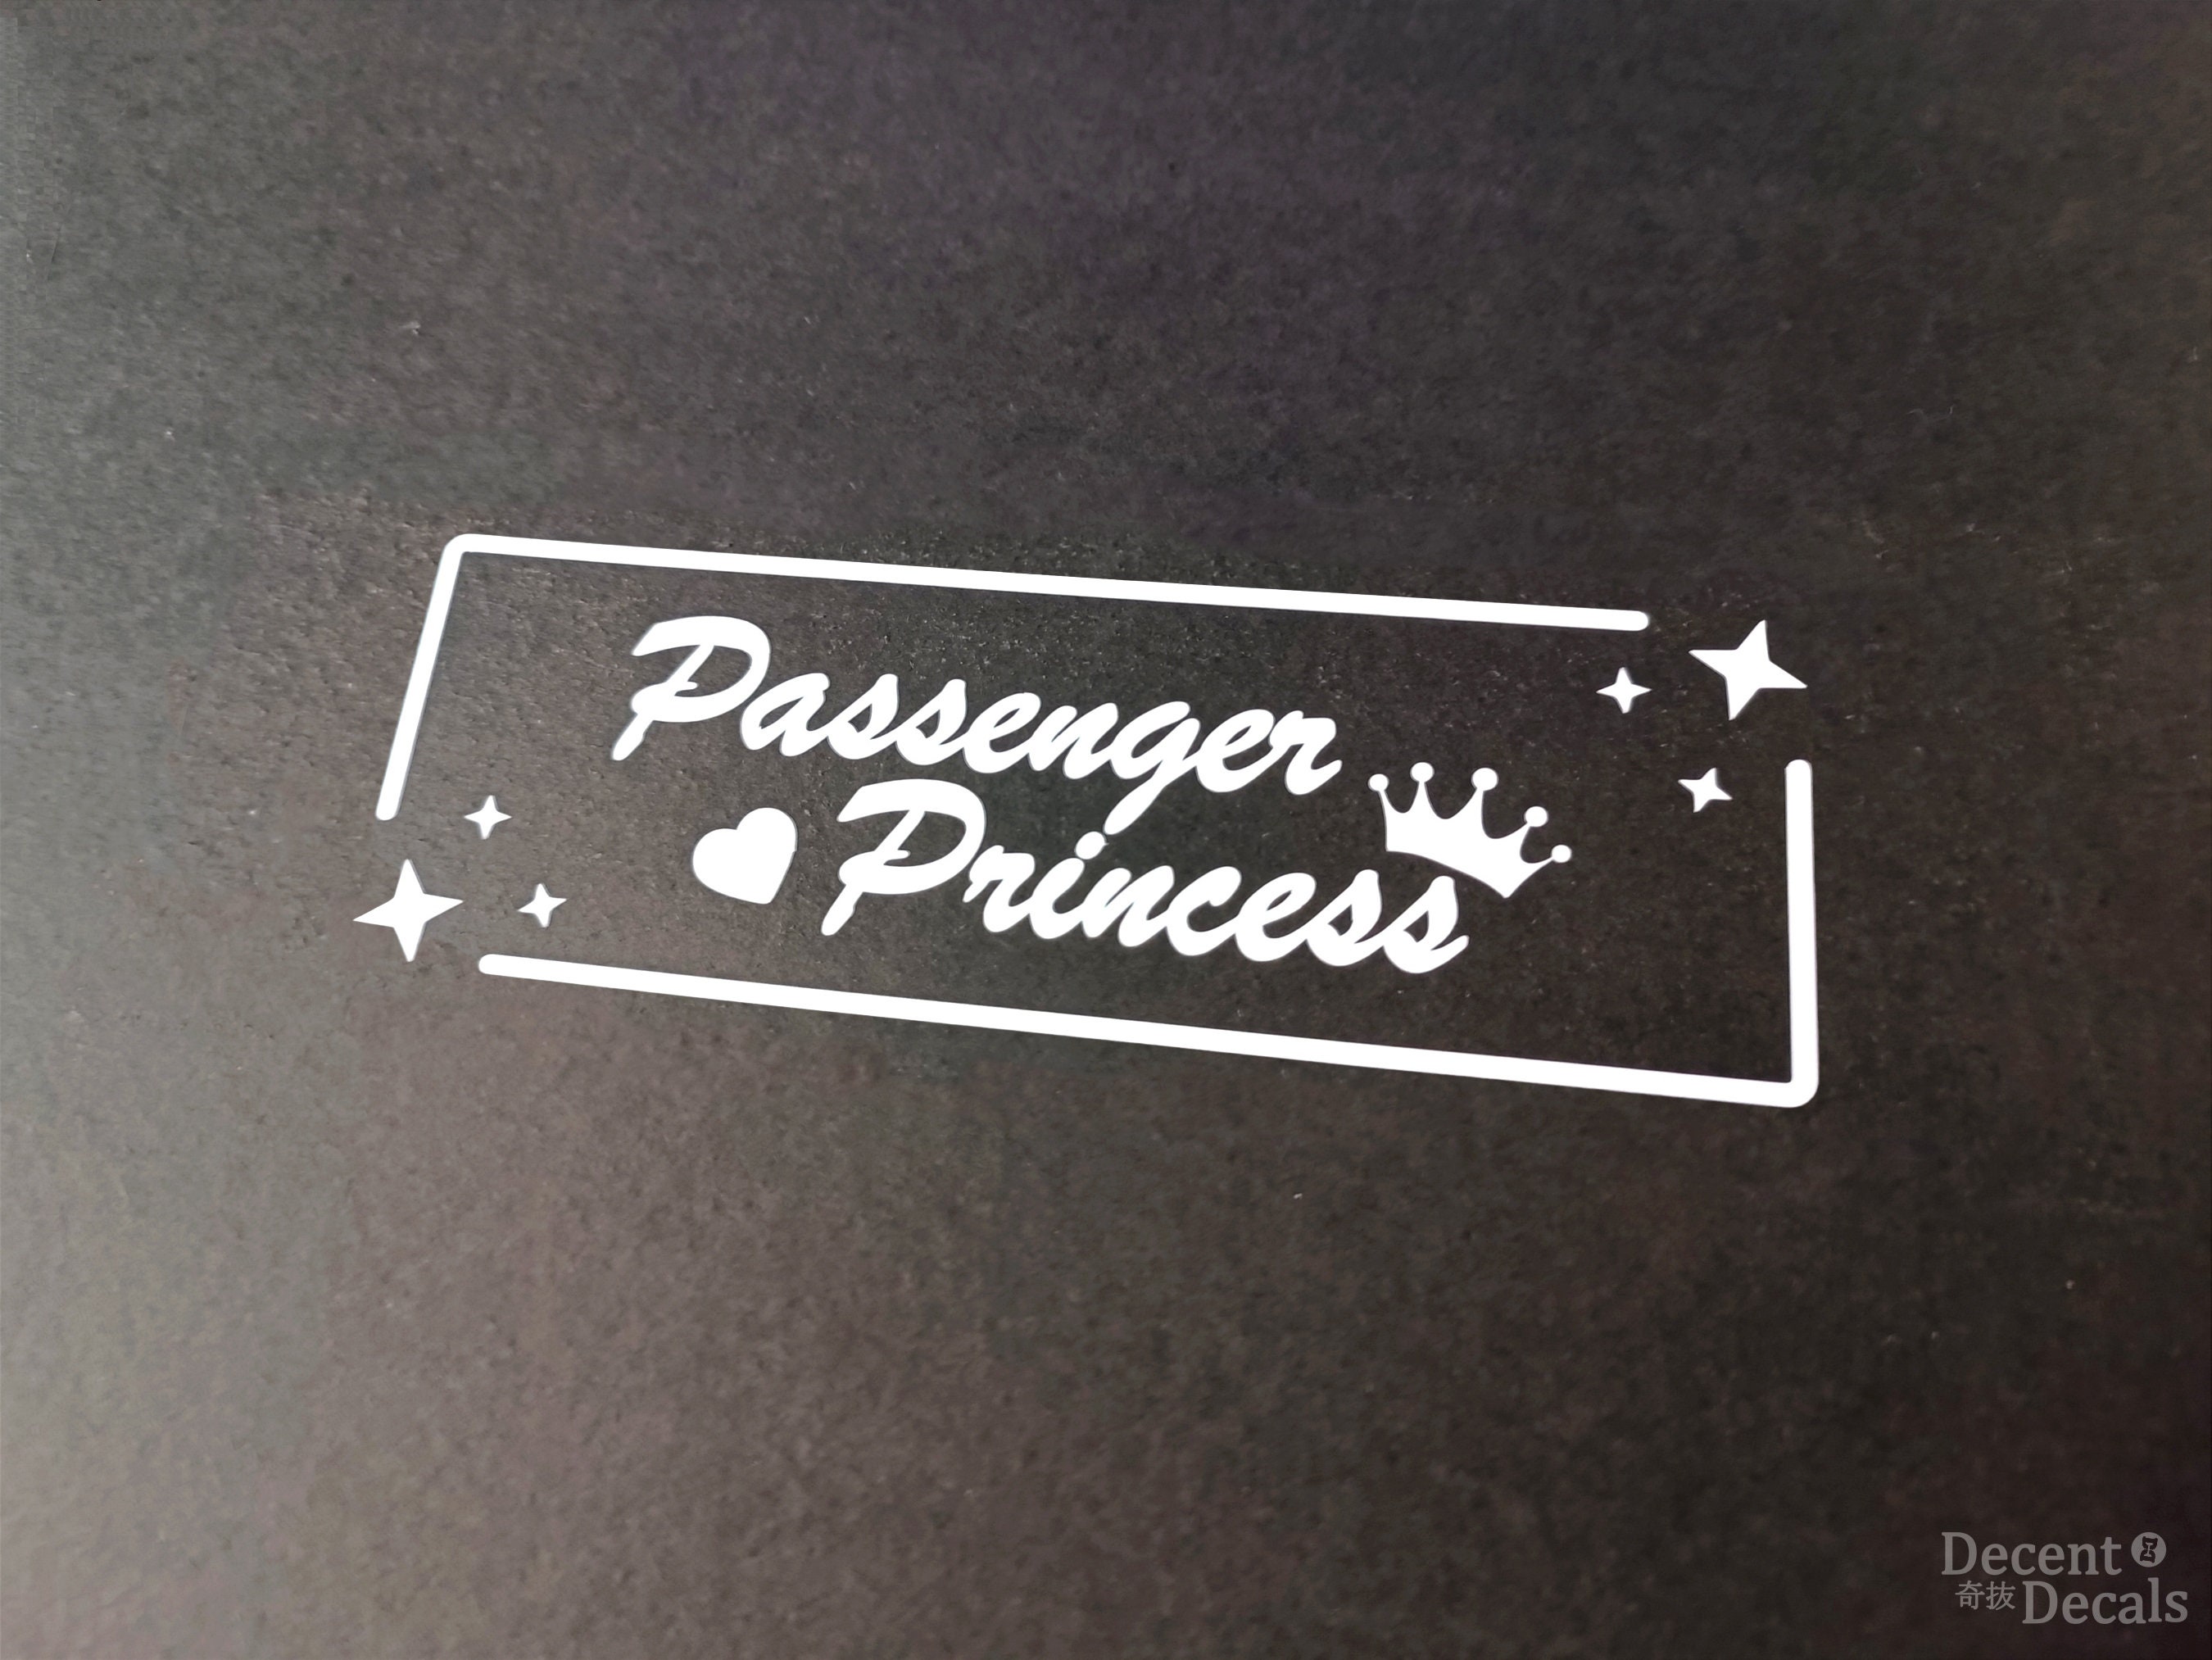 Sticker for Sale mit Beifahrer Prinzessin Retro Stil Autospiegel